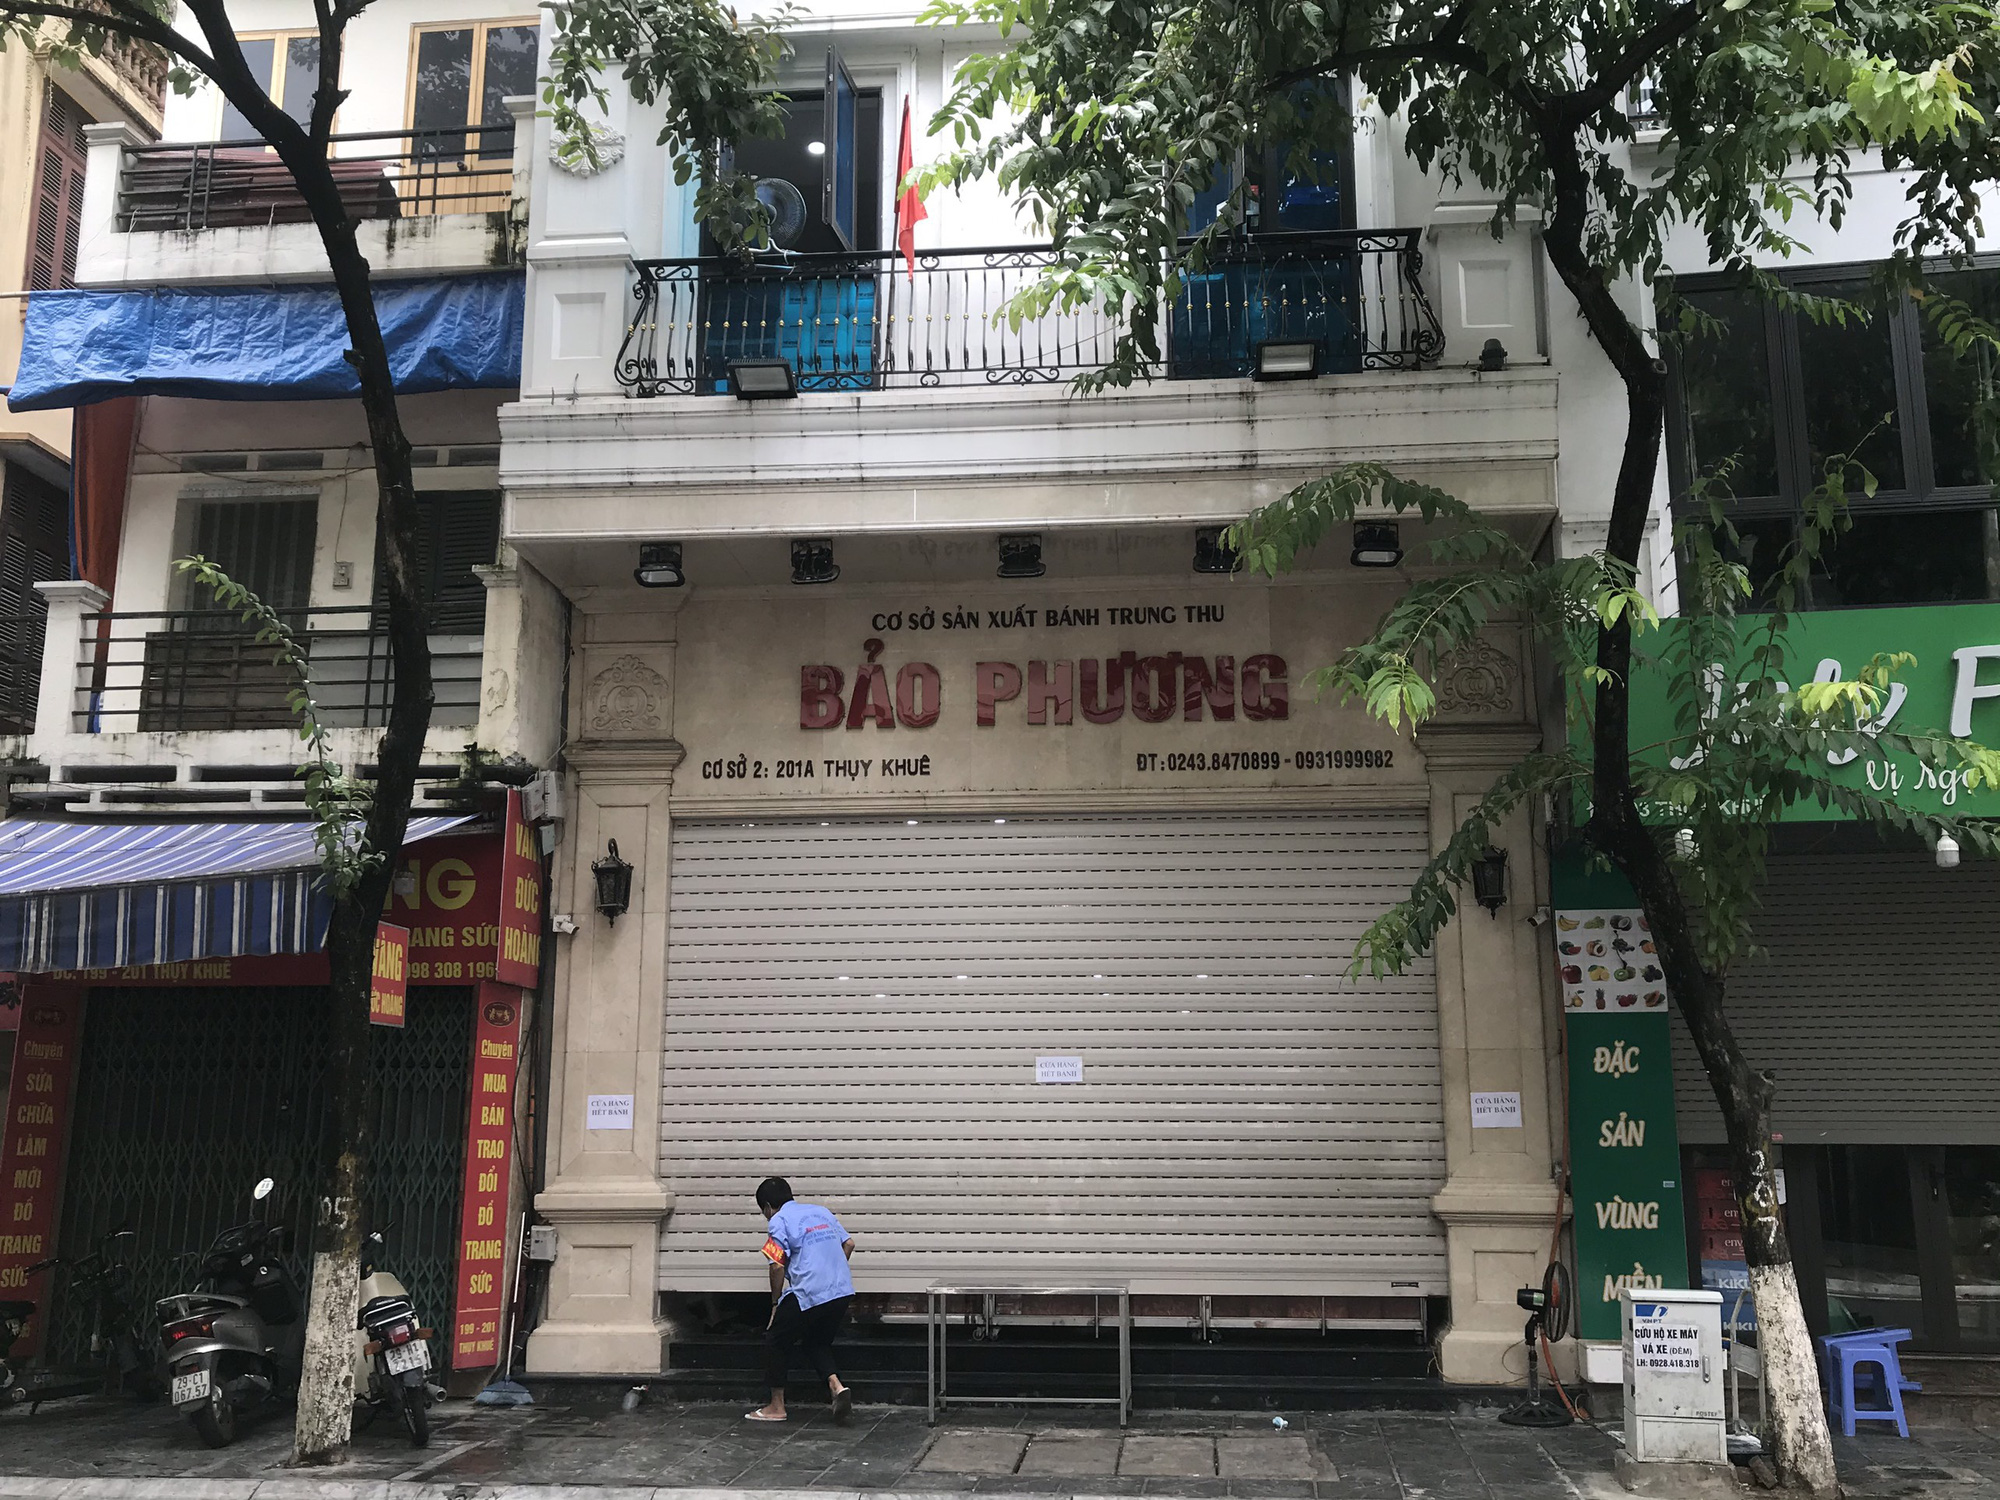 Tiệm bánh Trung thu Bảo Phương bị đóng cửa vì khách xếp hàng chen lấn - Ảnh 1.